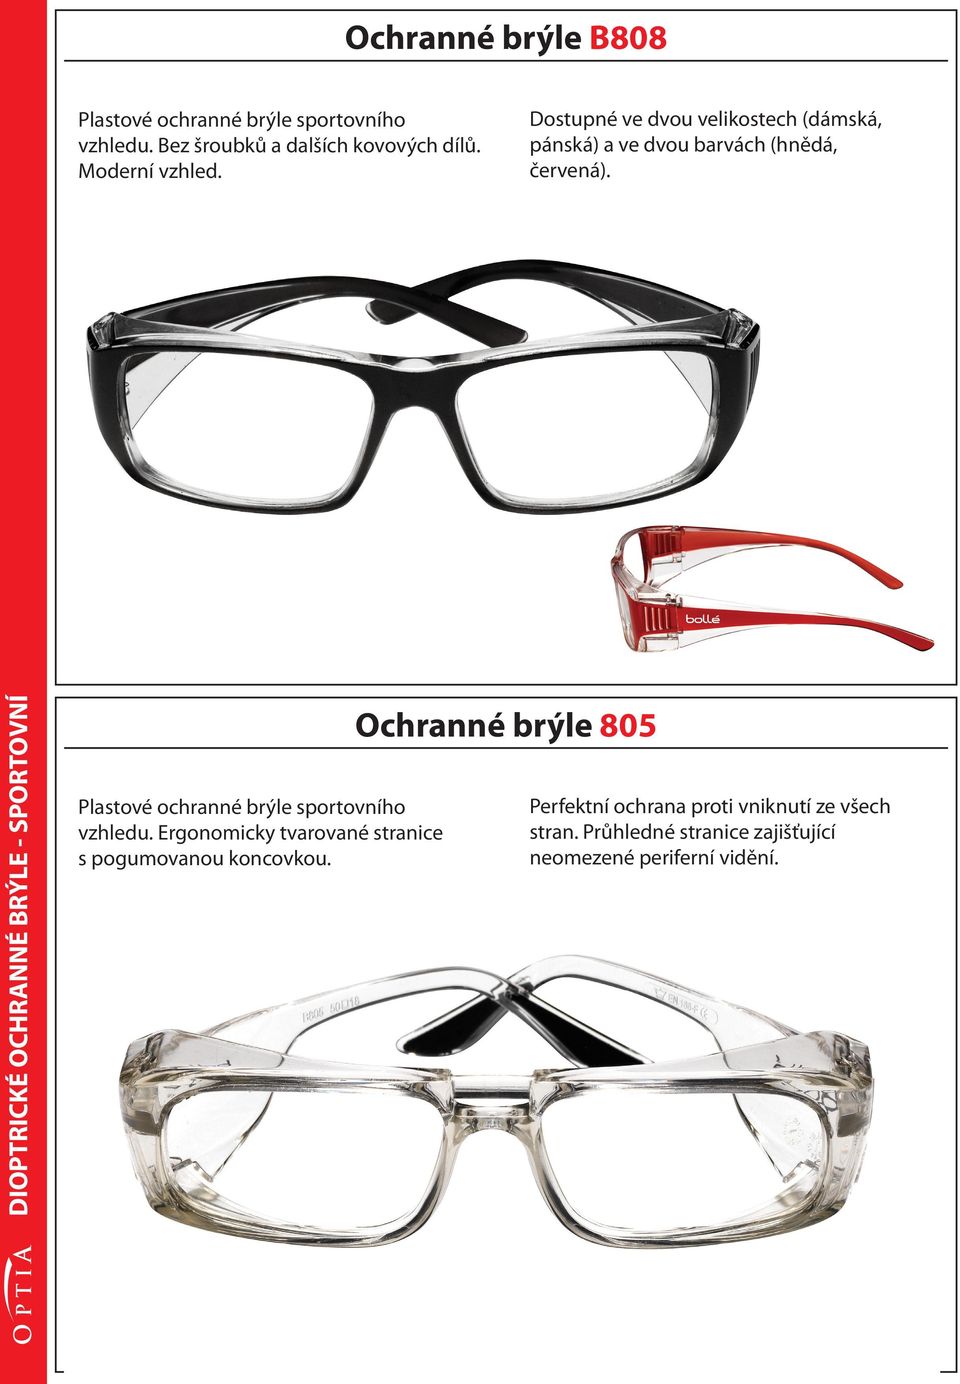 DIOPTRICKÉ OCHRANNÉ BRÝLE - SPORTOVNÍ Plastové ochranné brýle sportovního vzhledu.